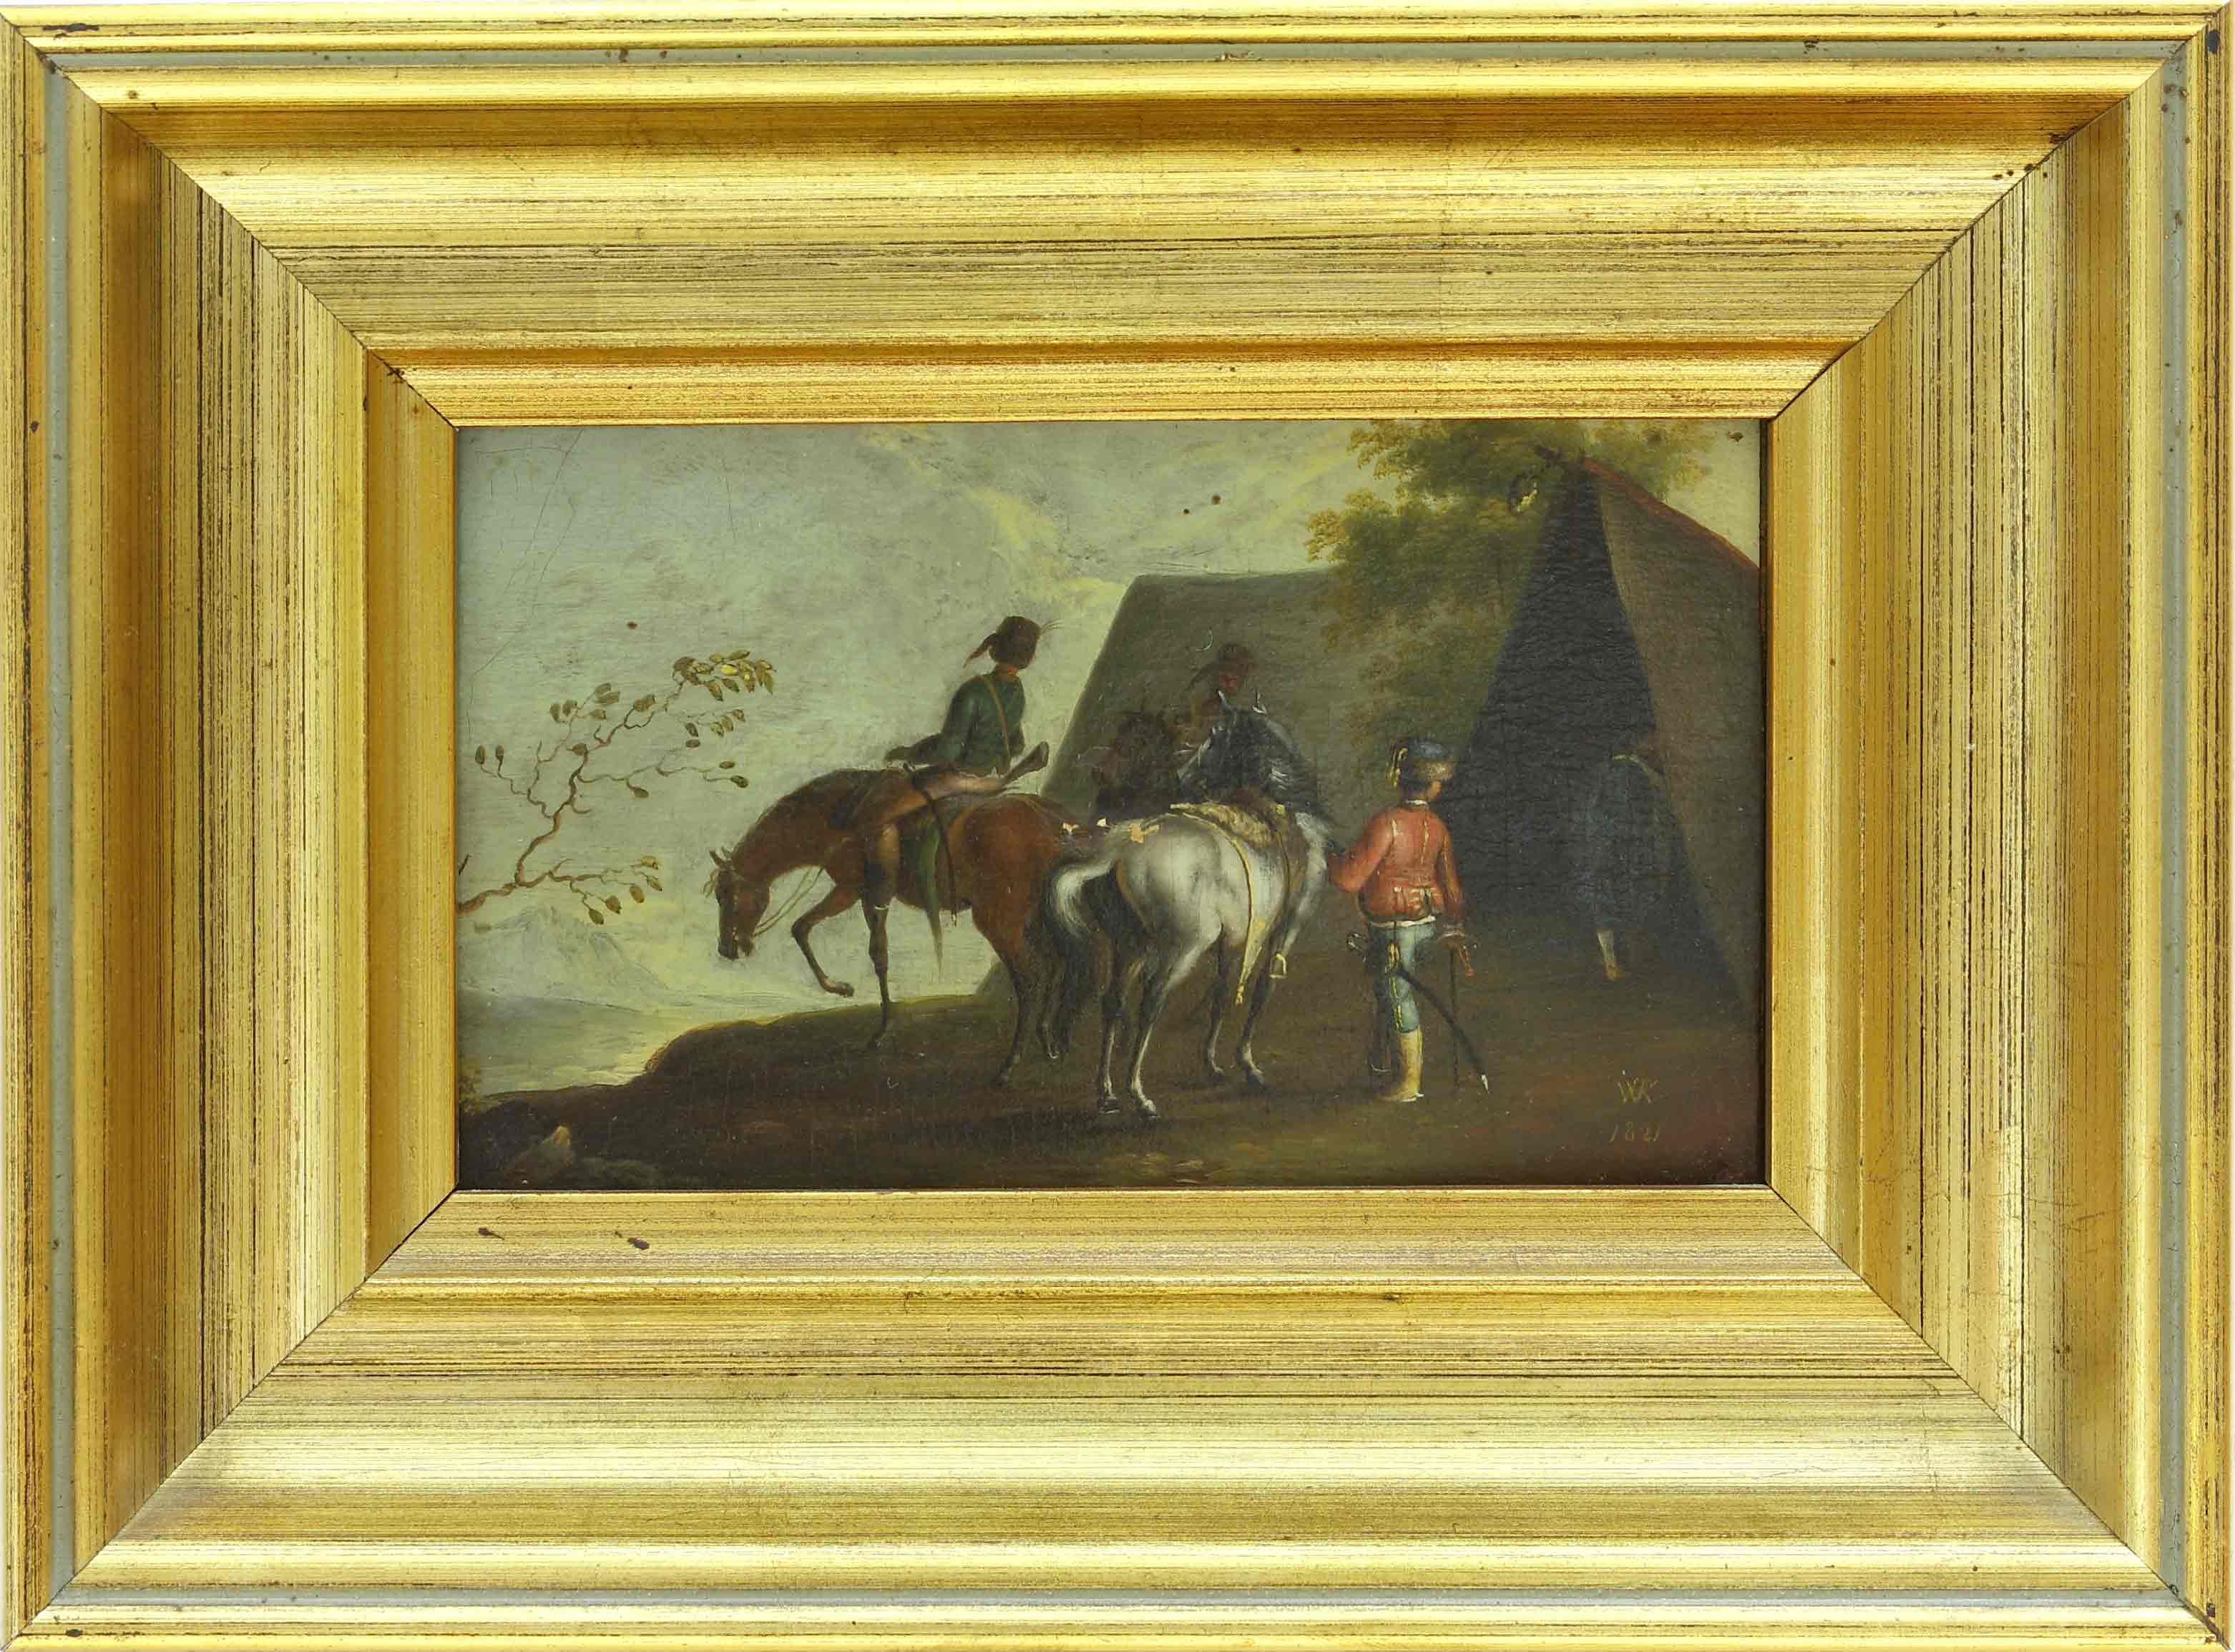 Auktionshaus Quentin Berlin  Gemälde Kobell  Wilhelm von (1766 Mannheim - 1855 MÃ¼nchen) zugeschr. Schlachtenszene.  Reitergruppe vor einem Zelt. 1821. GegenstÃ¼cke. Ãl auf Papier 